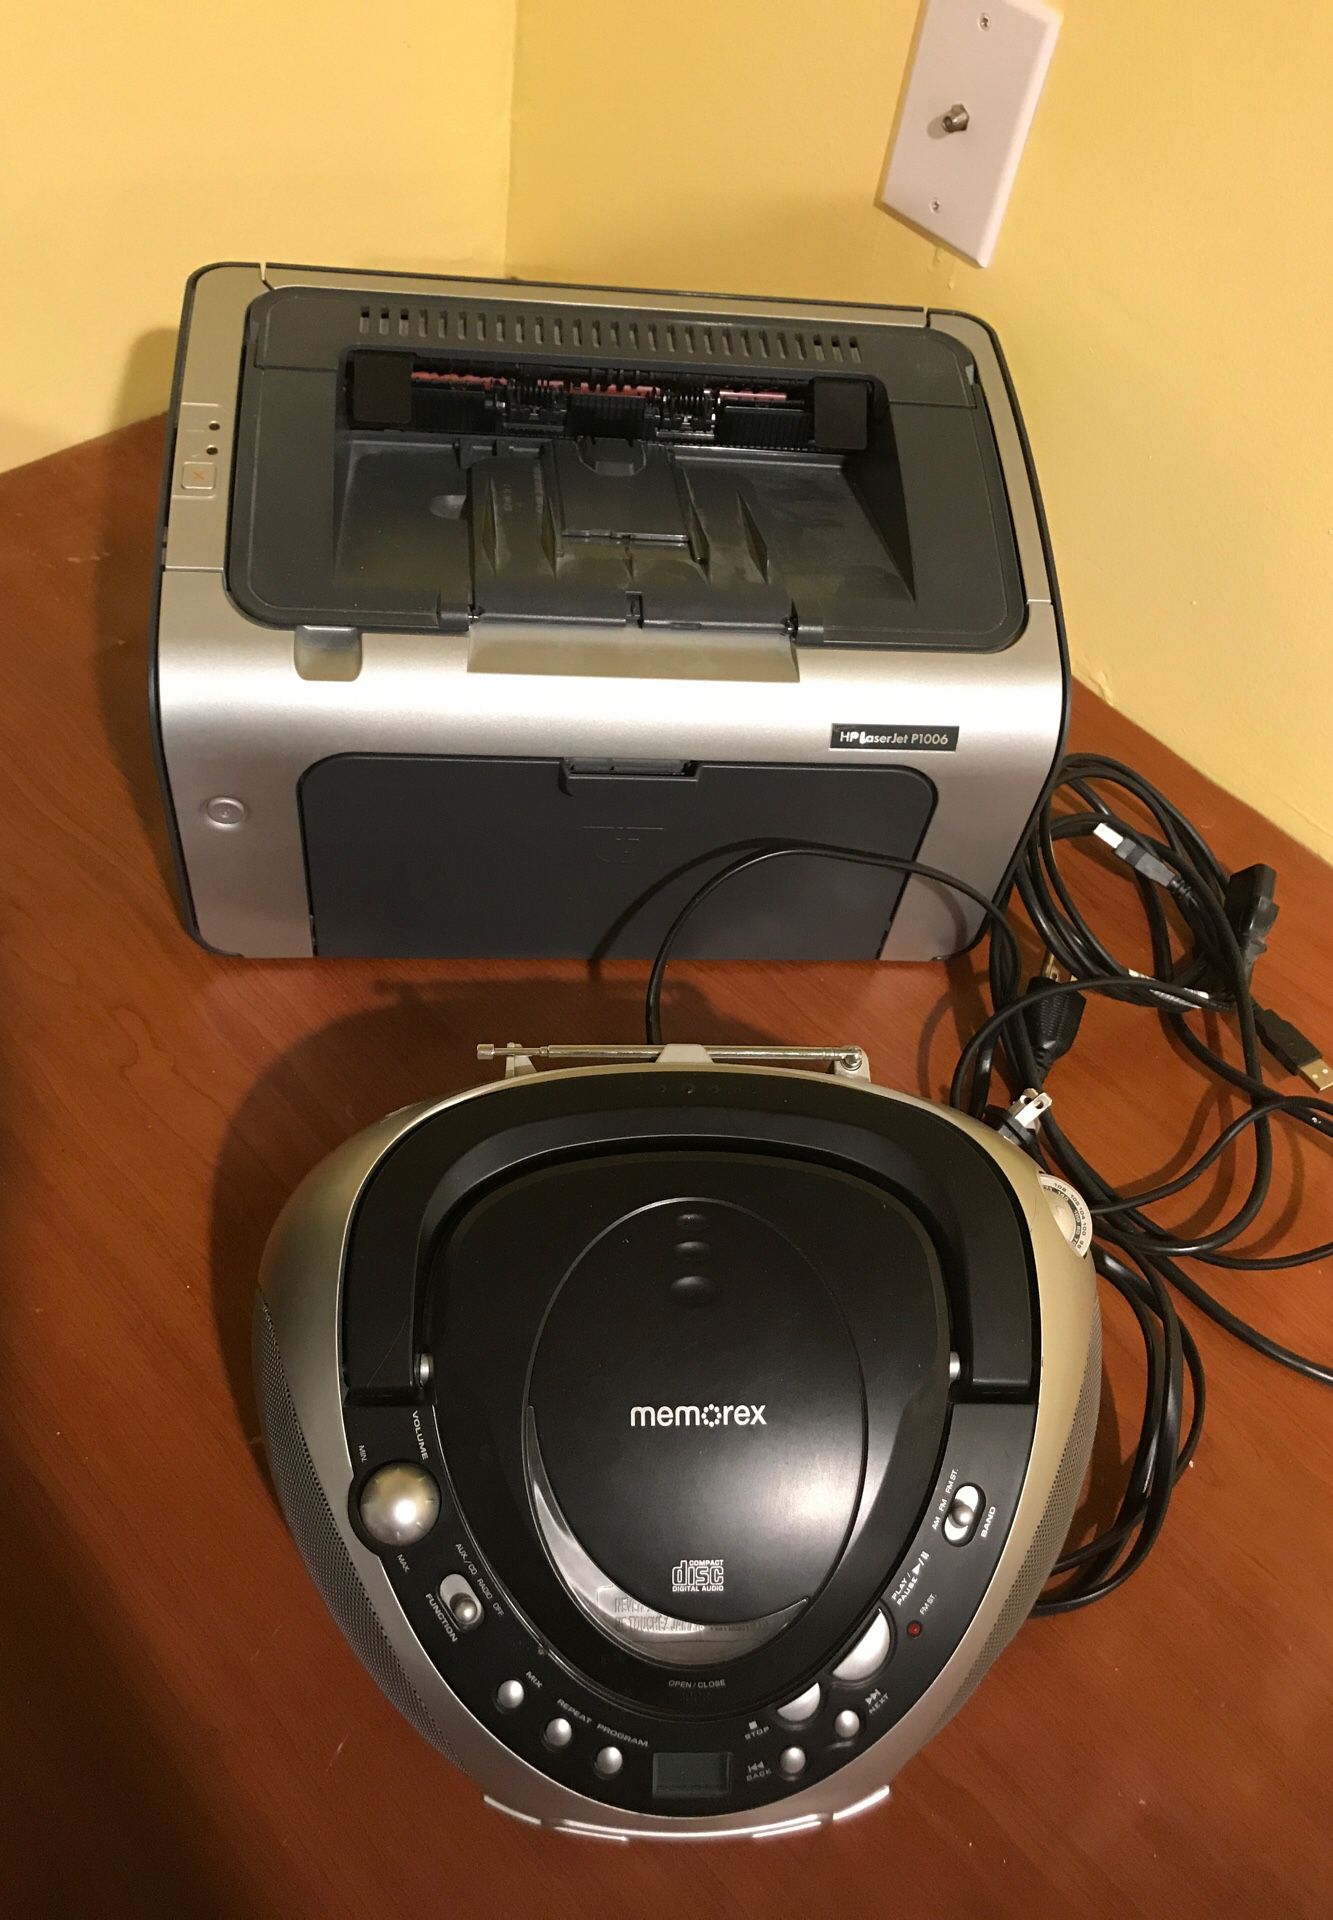 Printer and CD player